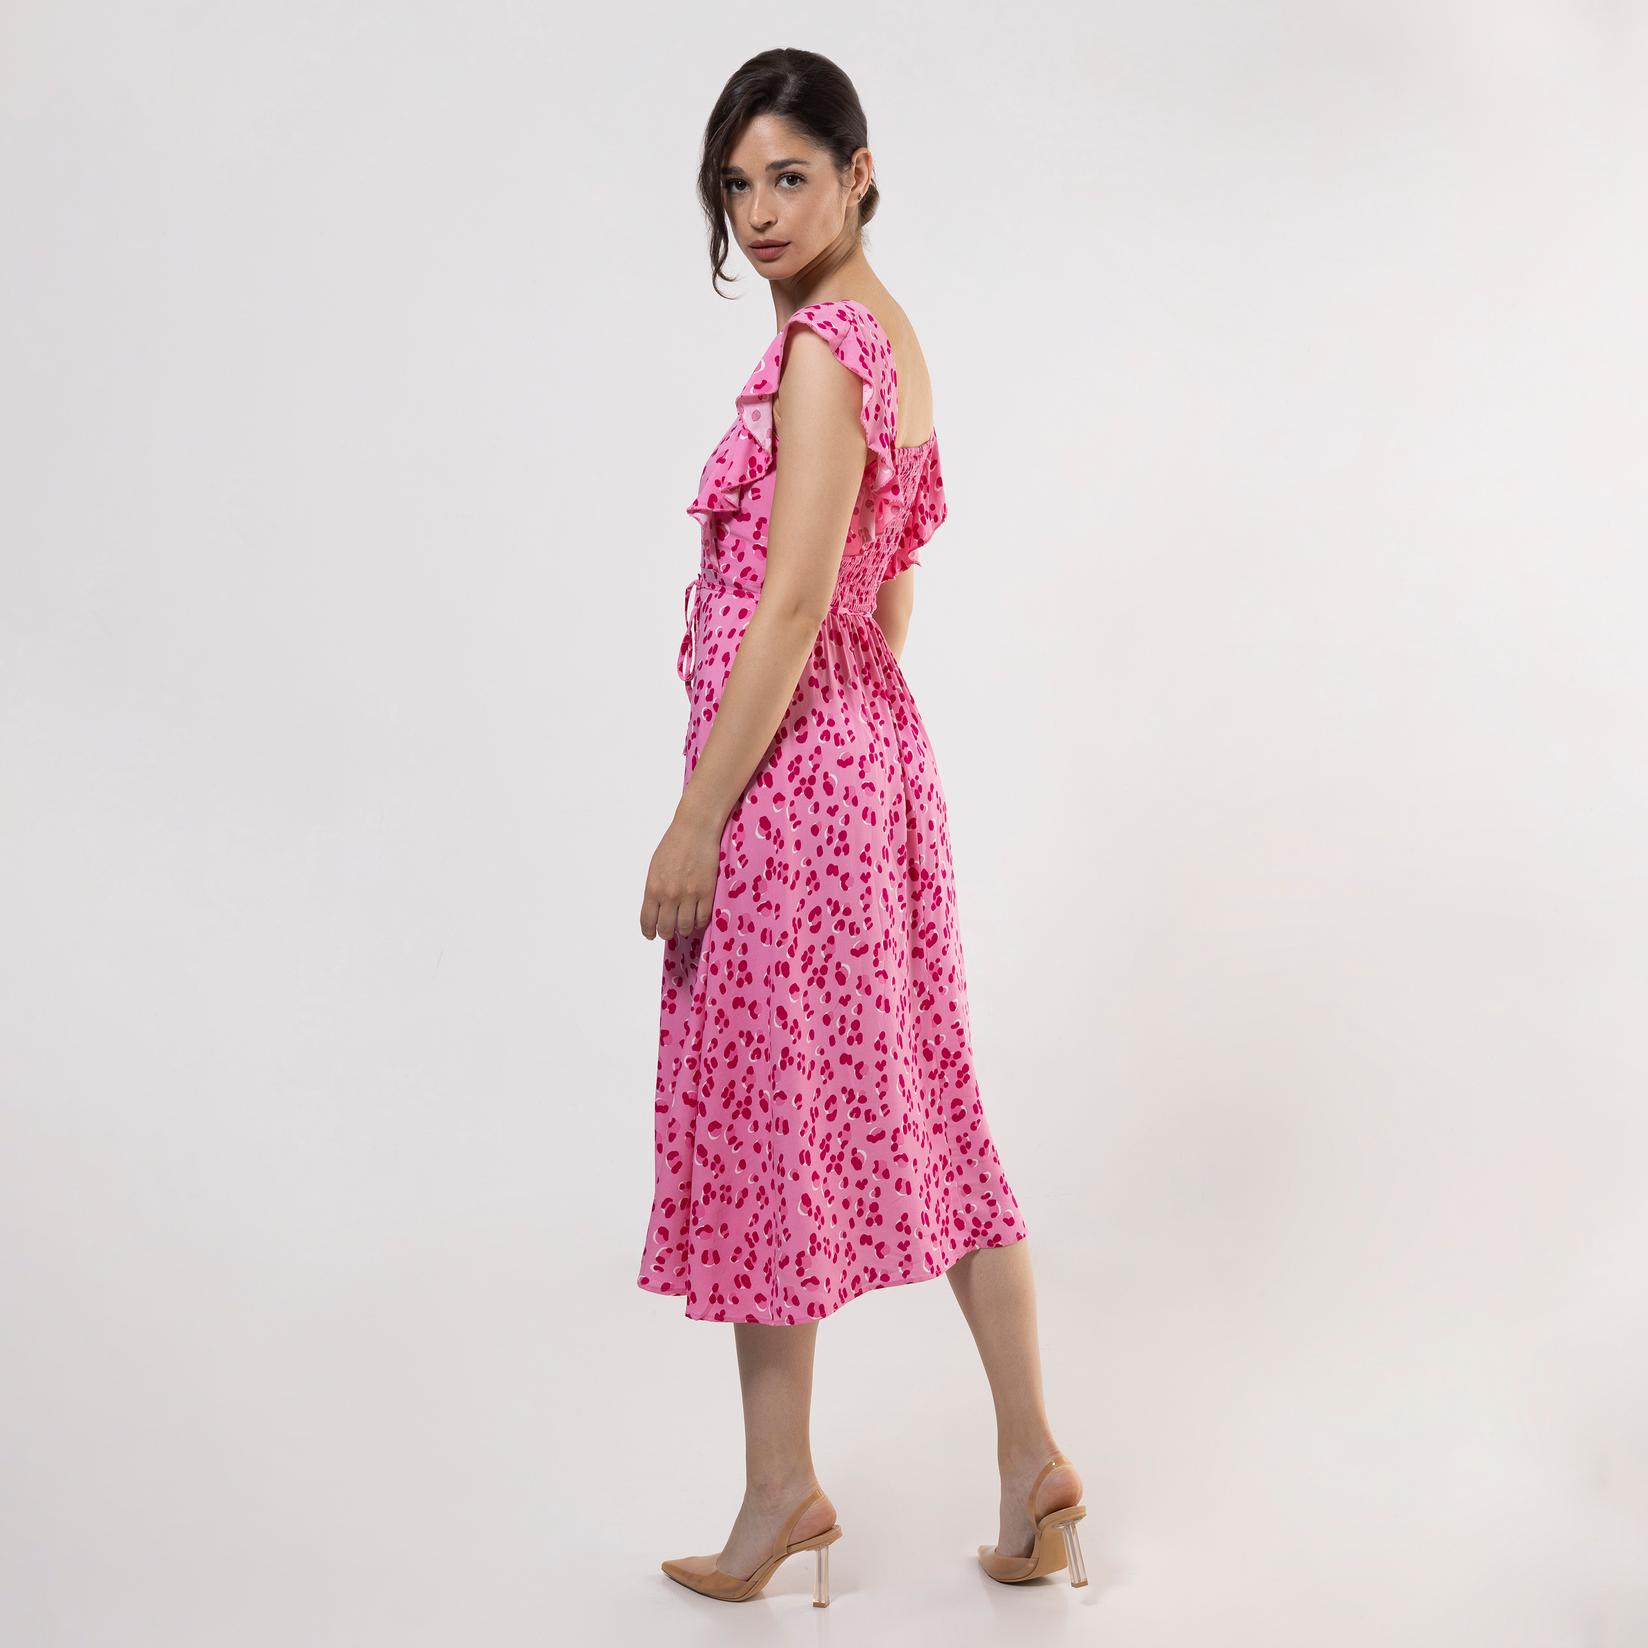 Selected image for FAME Ženska haljina sa karner rukavima roze